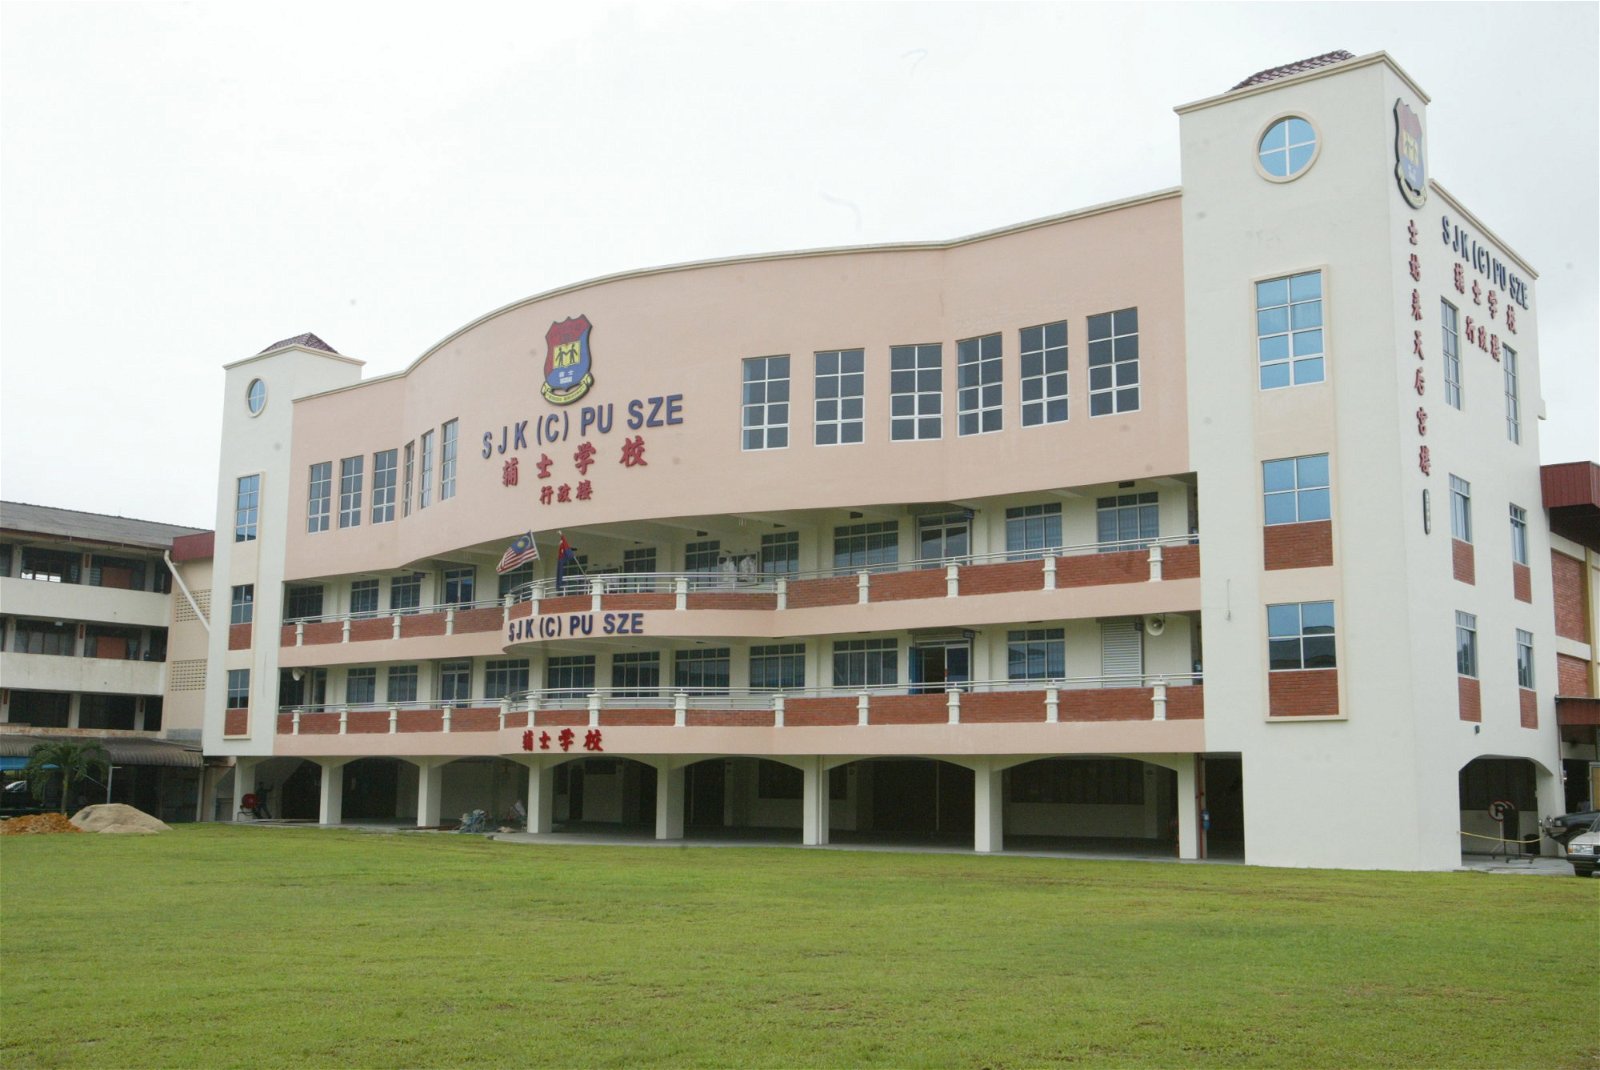 新山大型华小董事会仍在商讨国民型小学四至六年级马来文科增设夷文书法艺术单元的立场，目前未有其他具体行动。